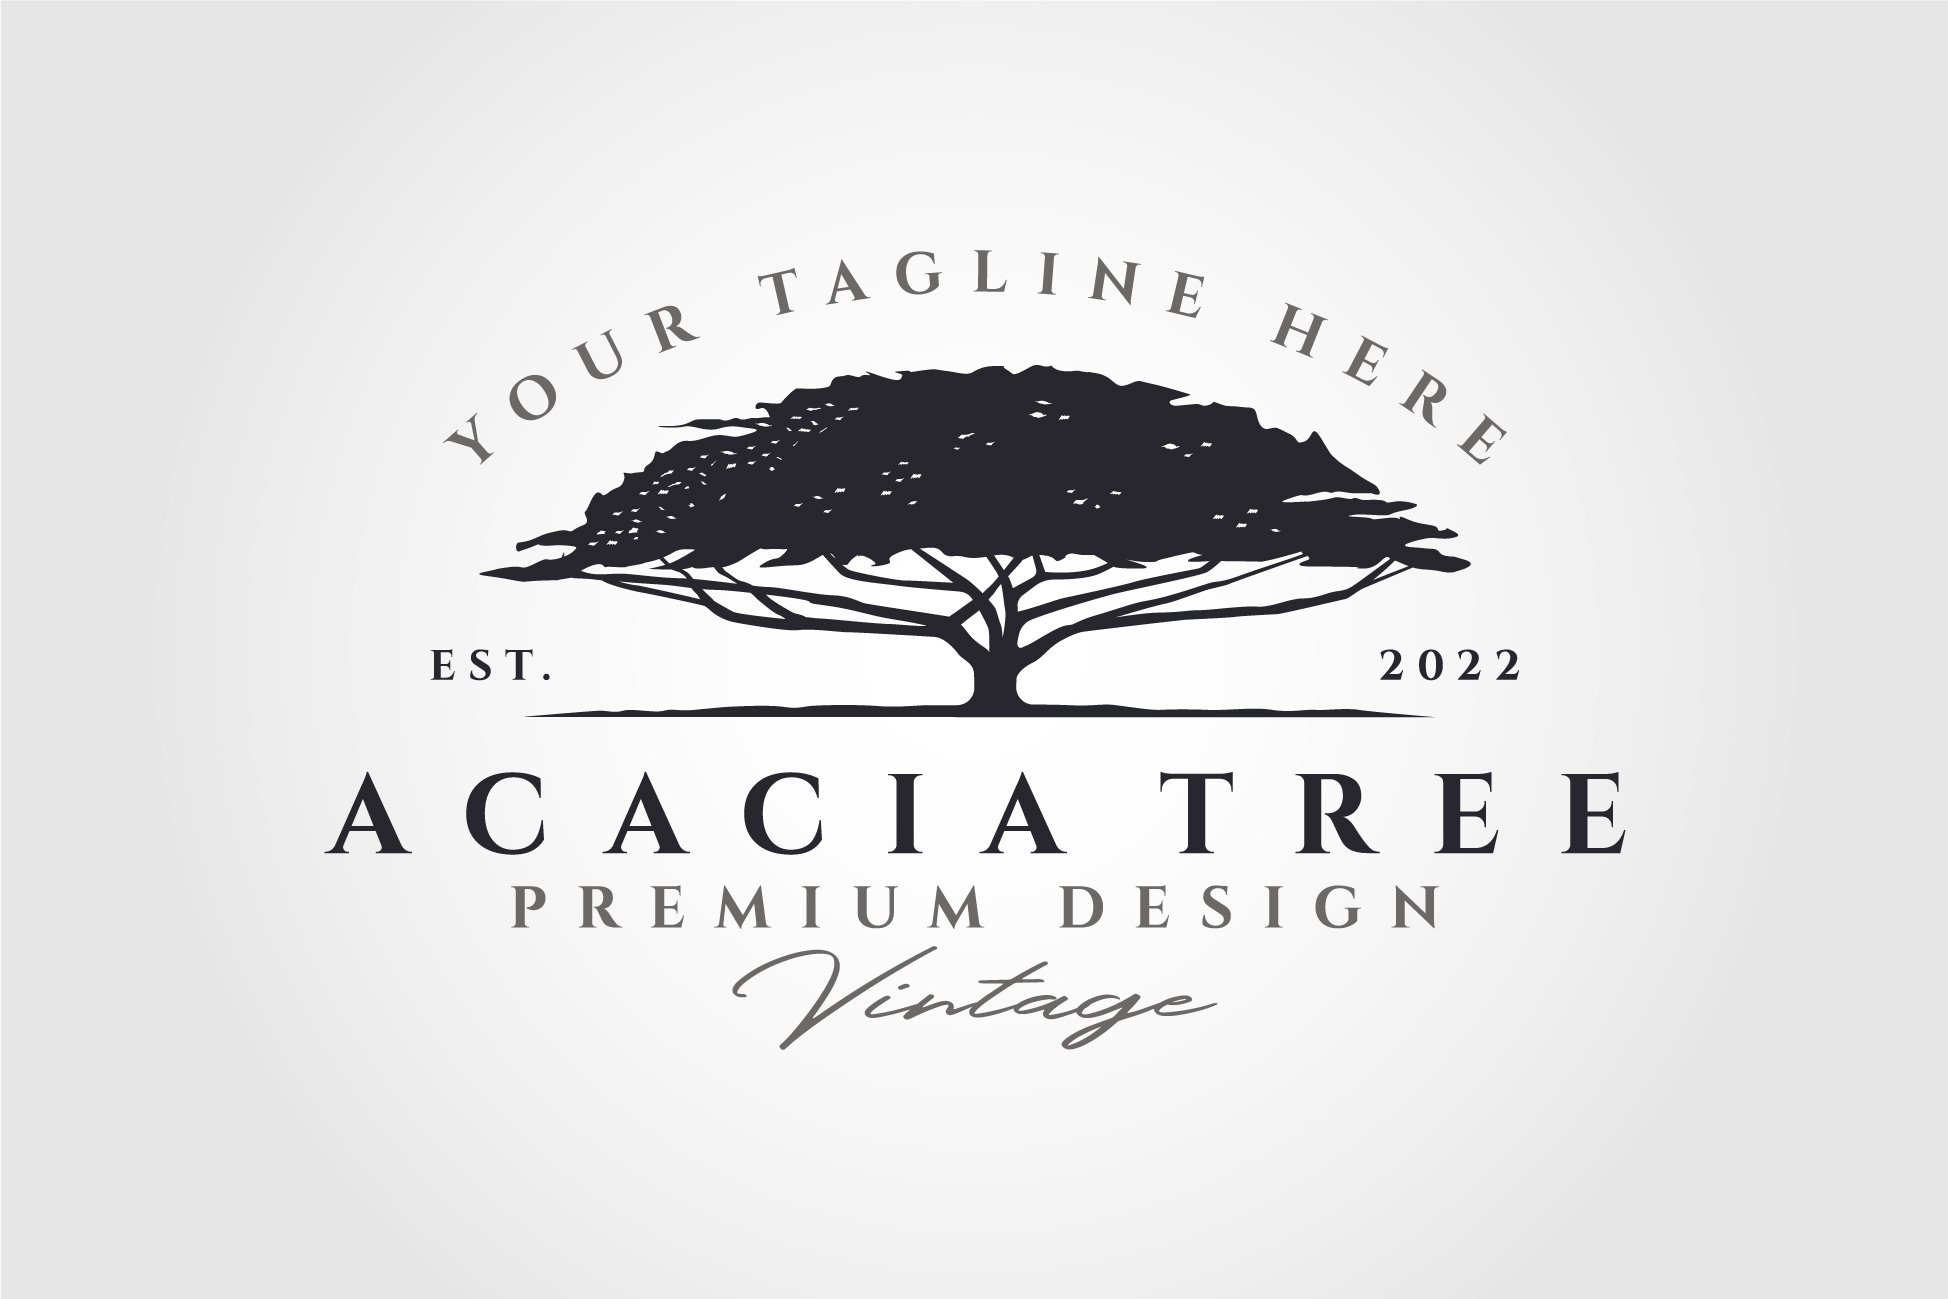 acacia tree silhouette